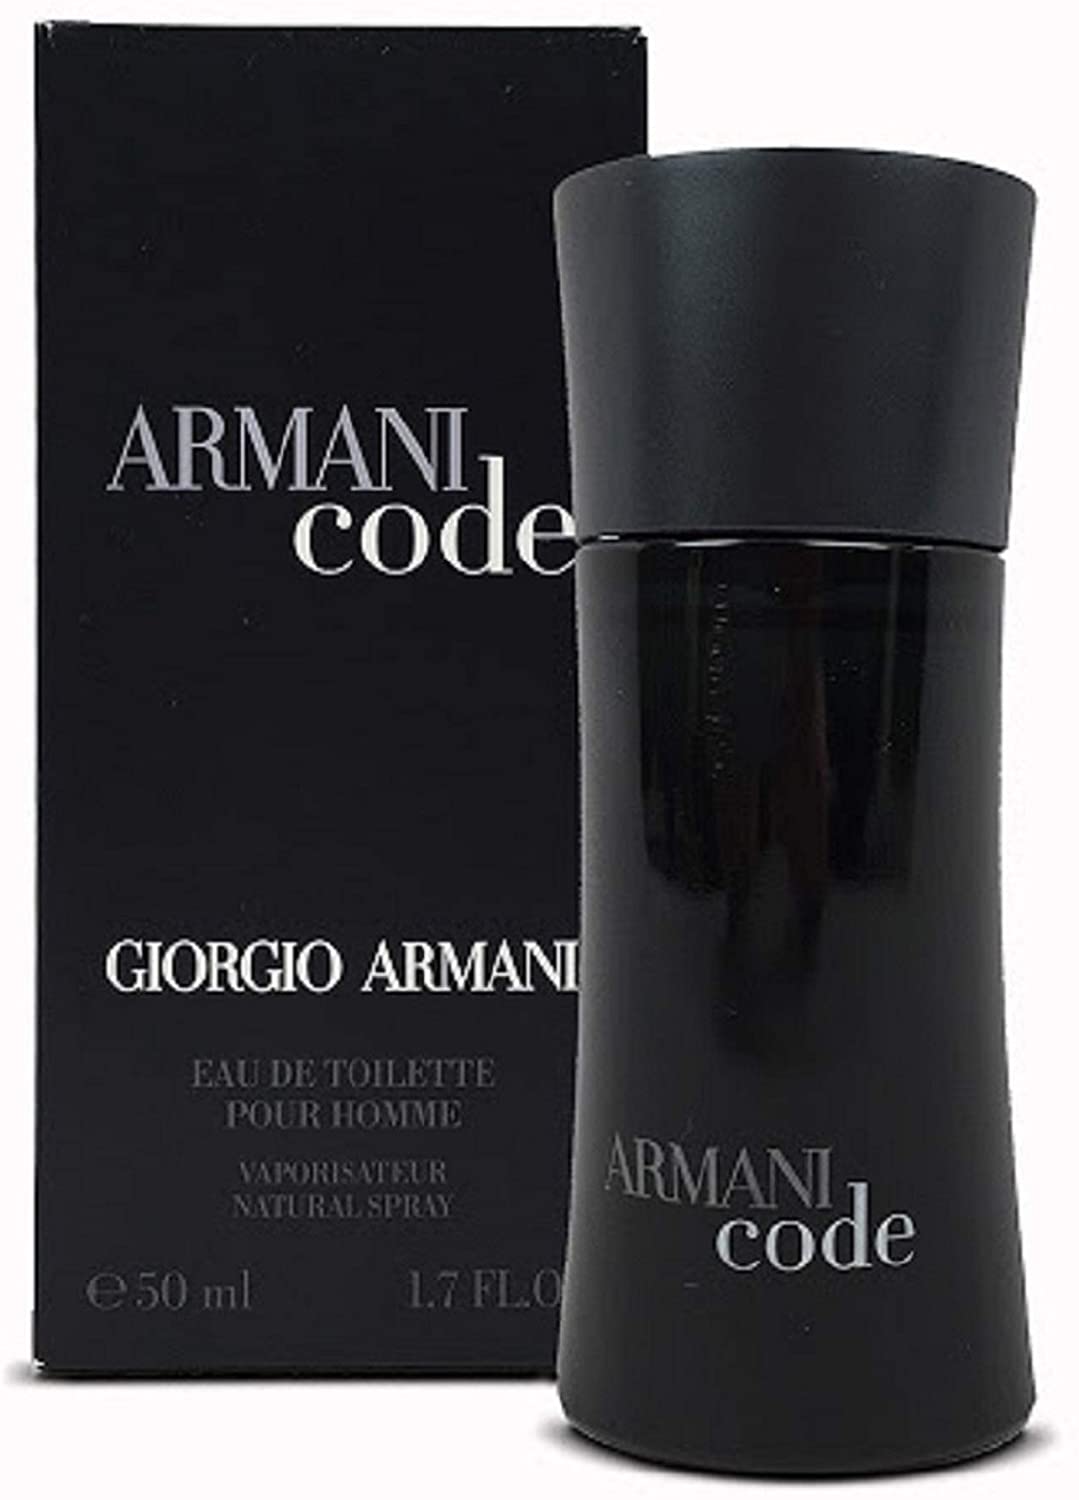 Giorgio Armani Code Eau De Toilette